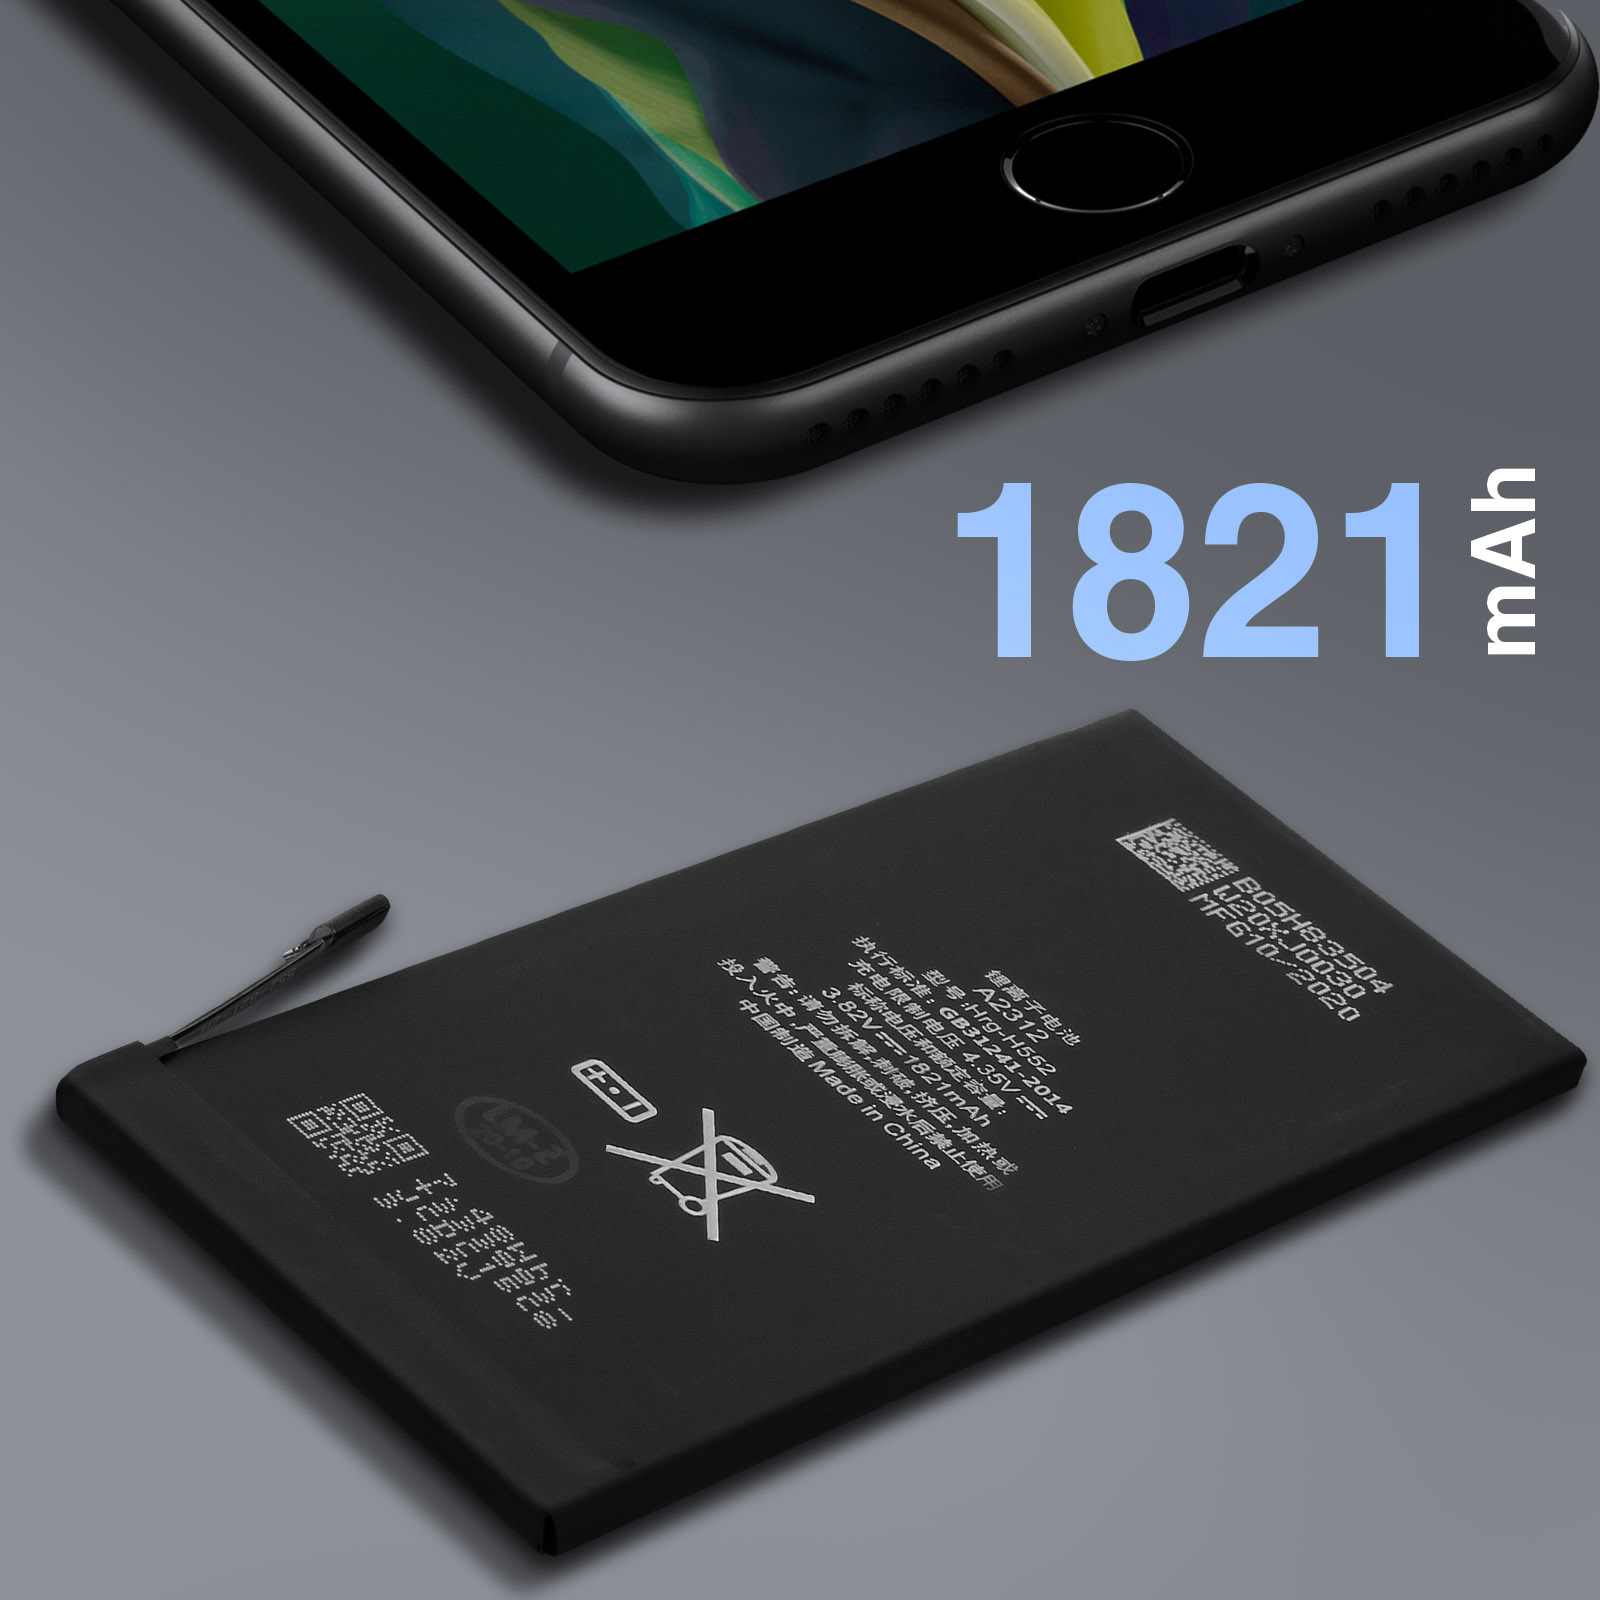 AKKU 31249: Batterie de smartphone pour Apple iPhone SE 2020, Li-Po, 1 821  m chez reichelt elektronik